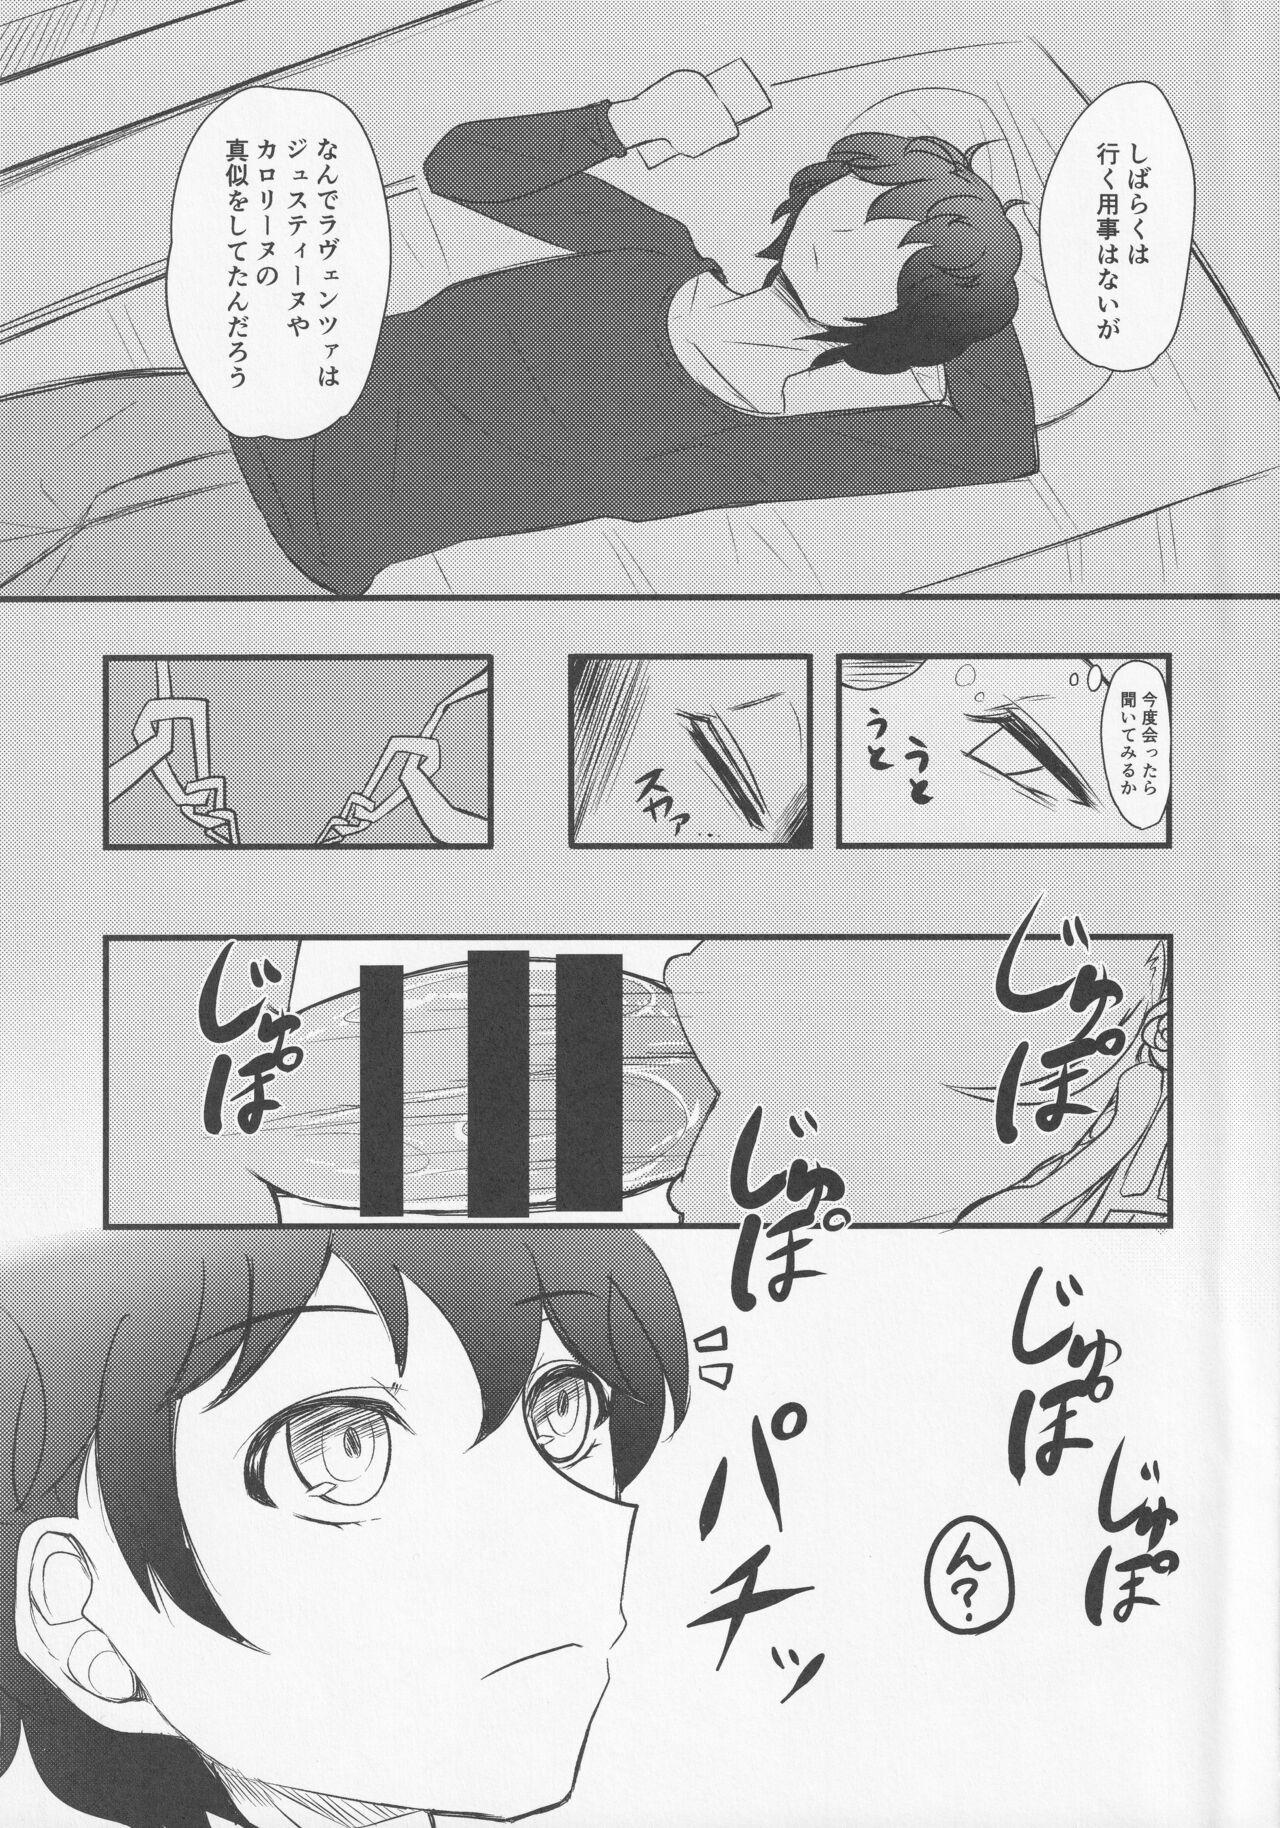 Movie Watashi ja damedesu ka? - Persona 5 Gaybukkake - Page 4